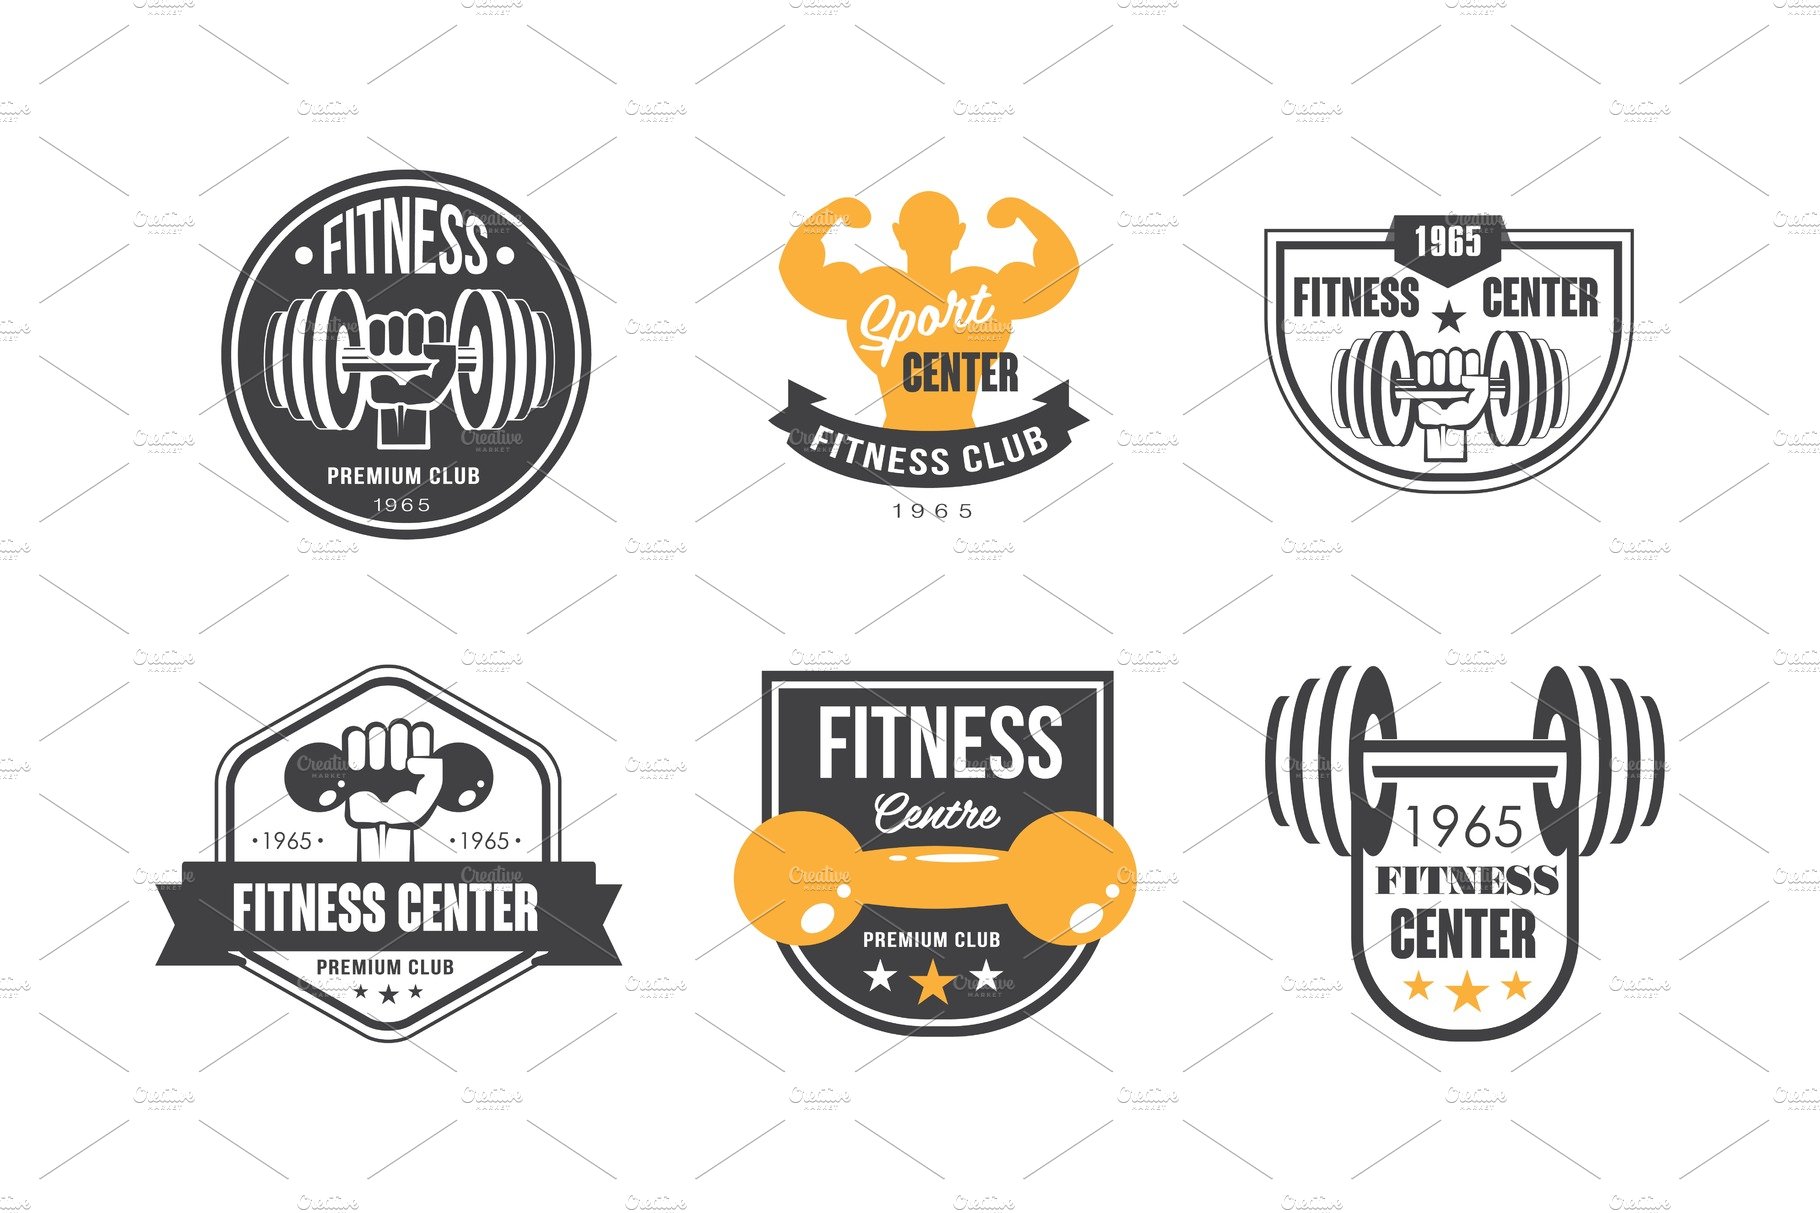 Fitness center logo design set cover image.